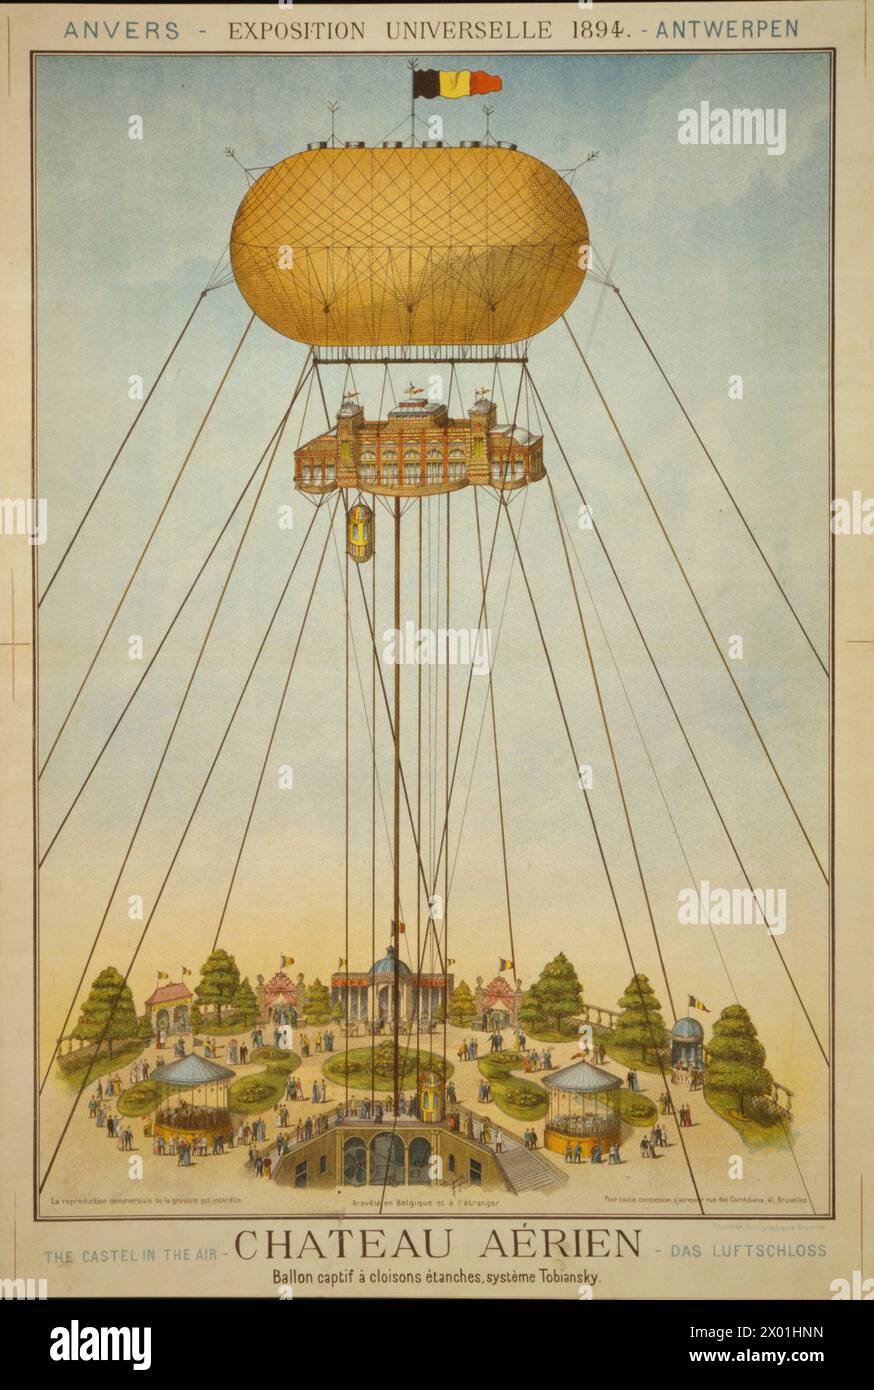 Chateau aérien. Ballon captif à cloisons étanches, système Tobiansky. Exposition universelle 1894. Stock Photo